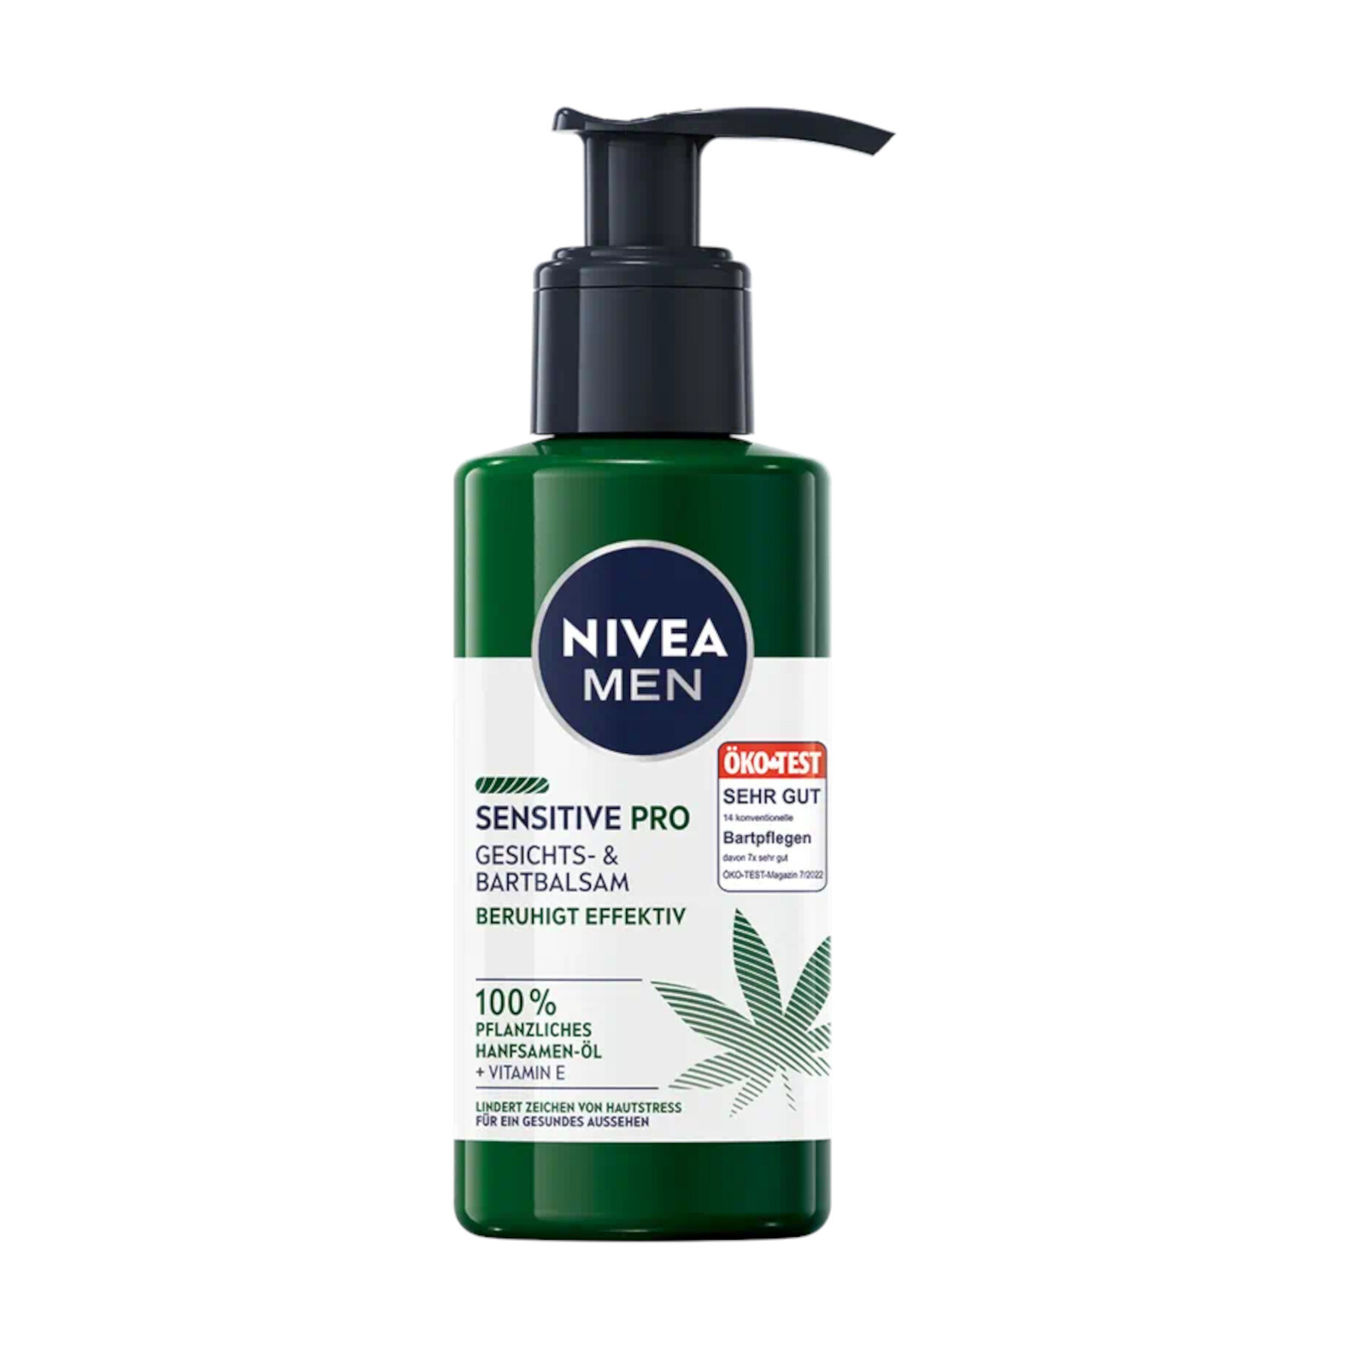 Nivea Sensitive Pro Gesichts- und Bartbalsam von Nivea